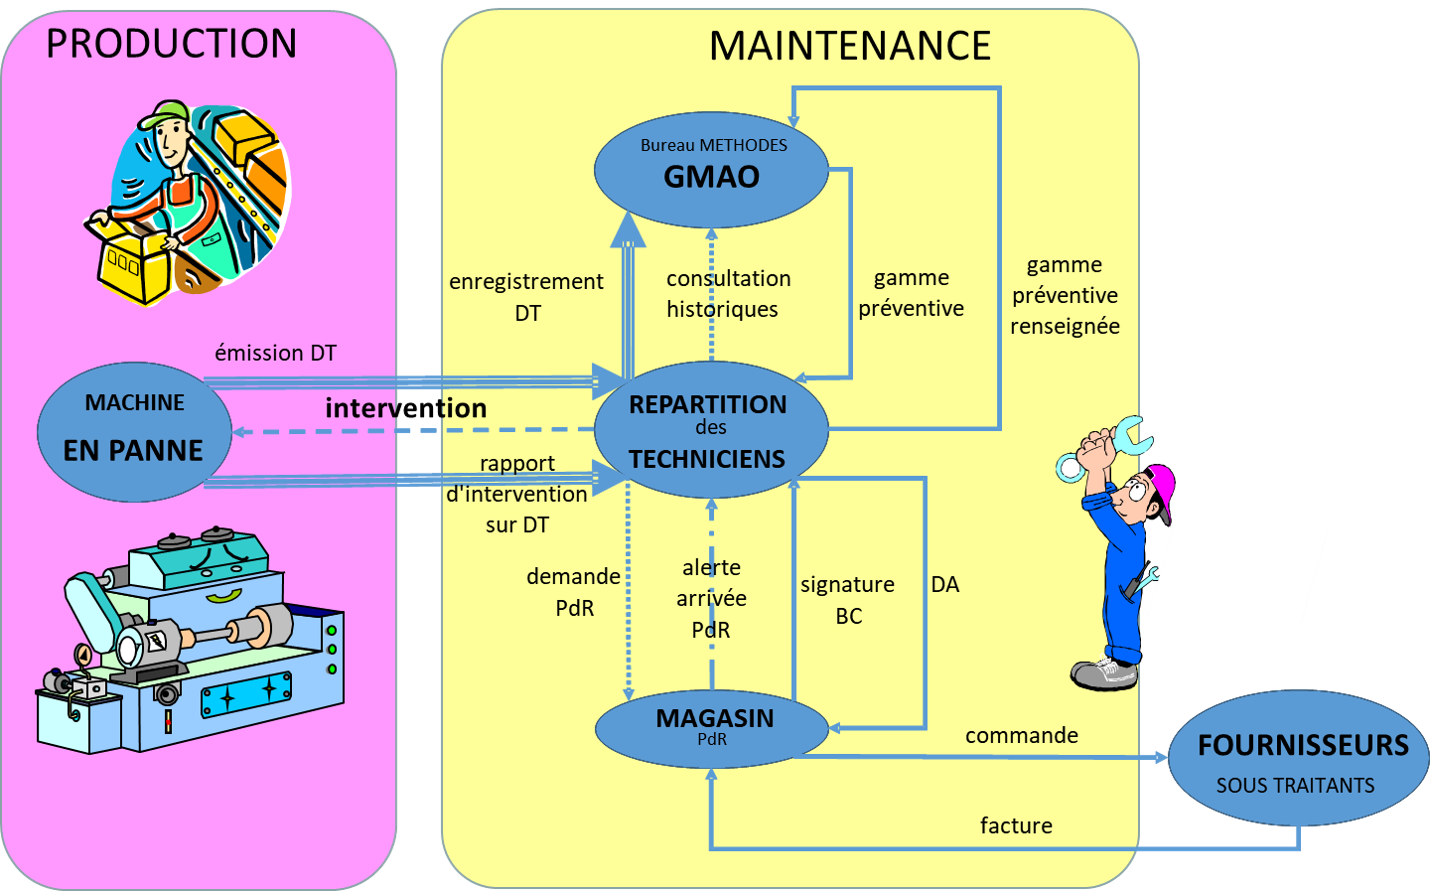 Synoptique des flux d’informations entre maintenance et production (DT : demande de travaux ; GMAO : gestion de maintenance assistée par ordinateur ; PdR : pièce de rechange ; BC : bon de commande ; DA : demande d’achat)